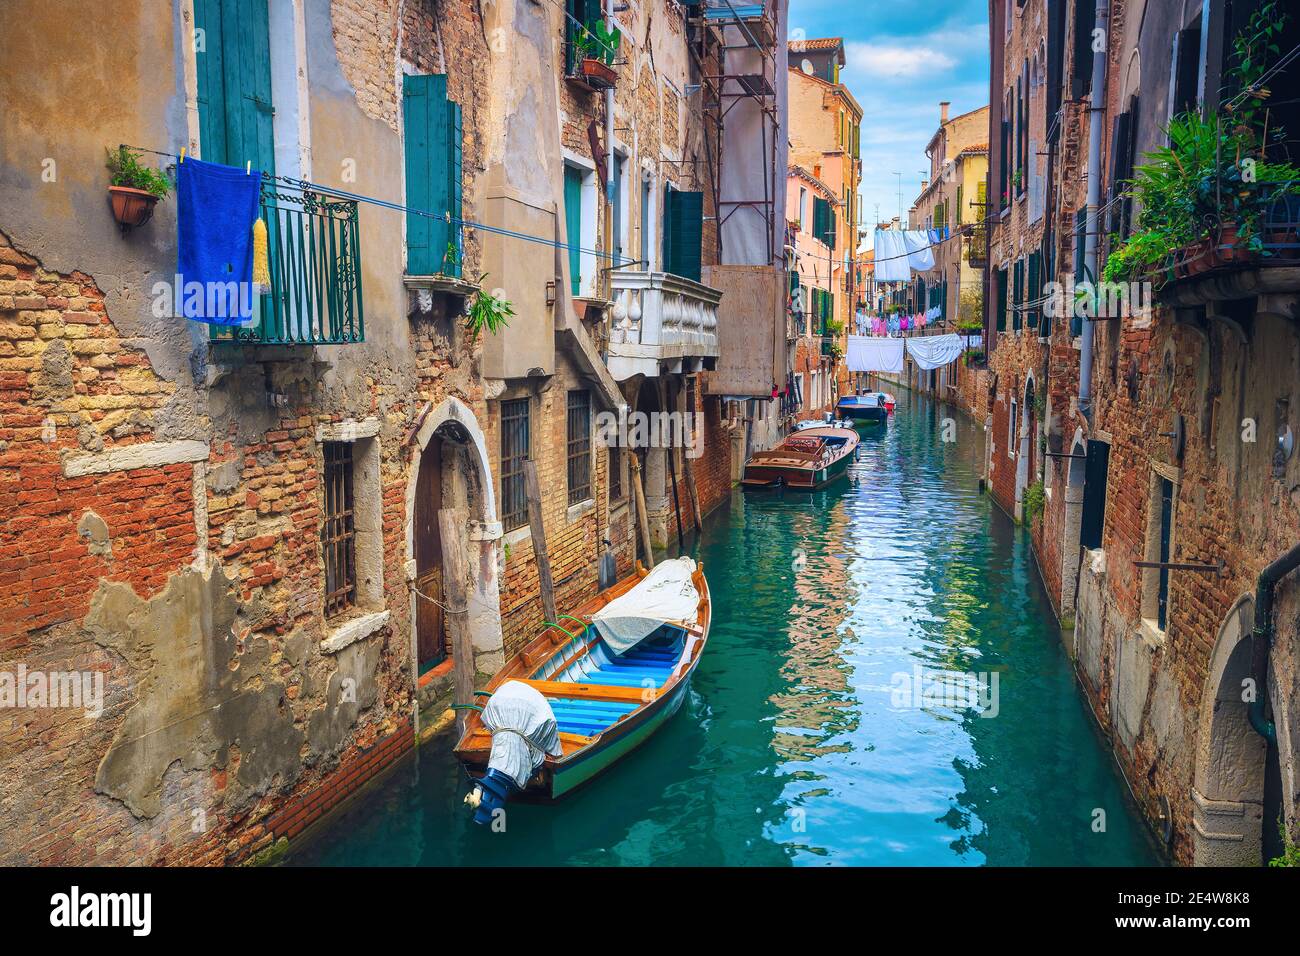 Fantastica vista sulla strada con motoscafi ancorati sullo stretto canale d'acqua, Venezia, Italia, Europa Foto Stock